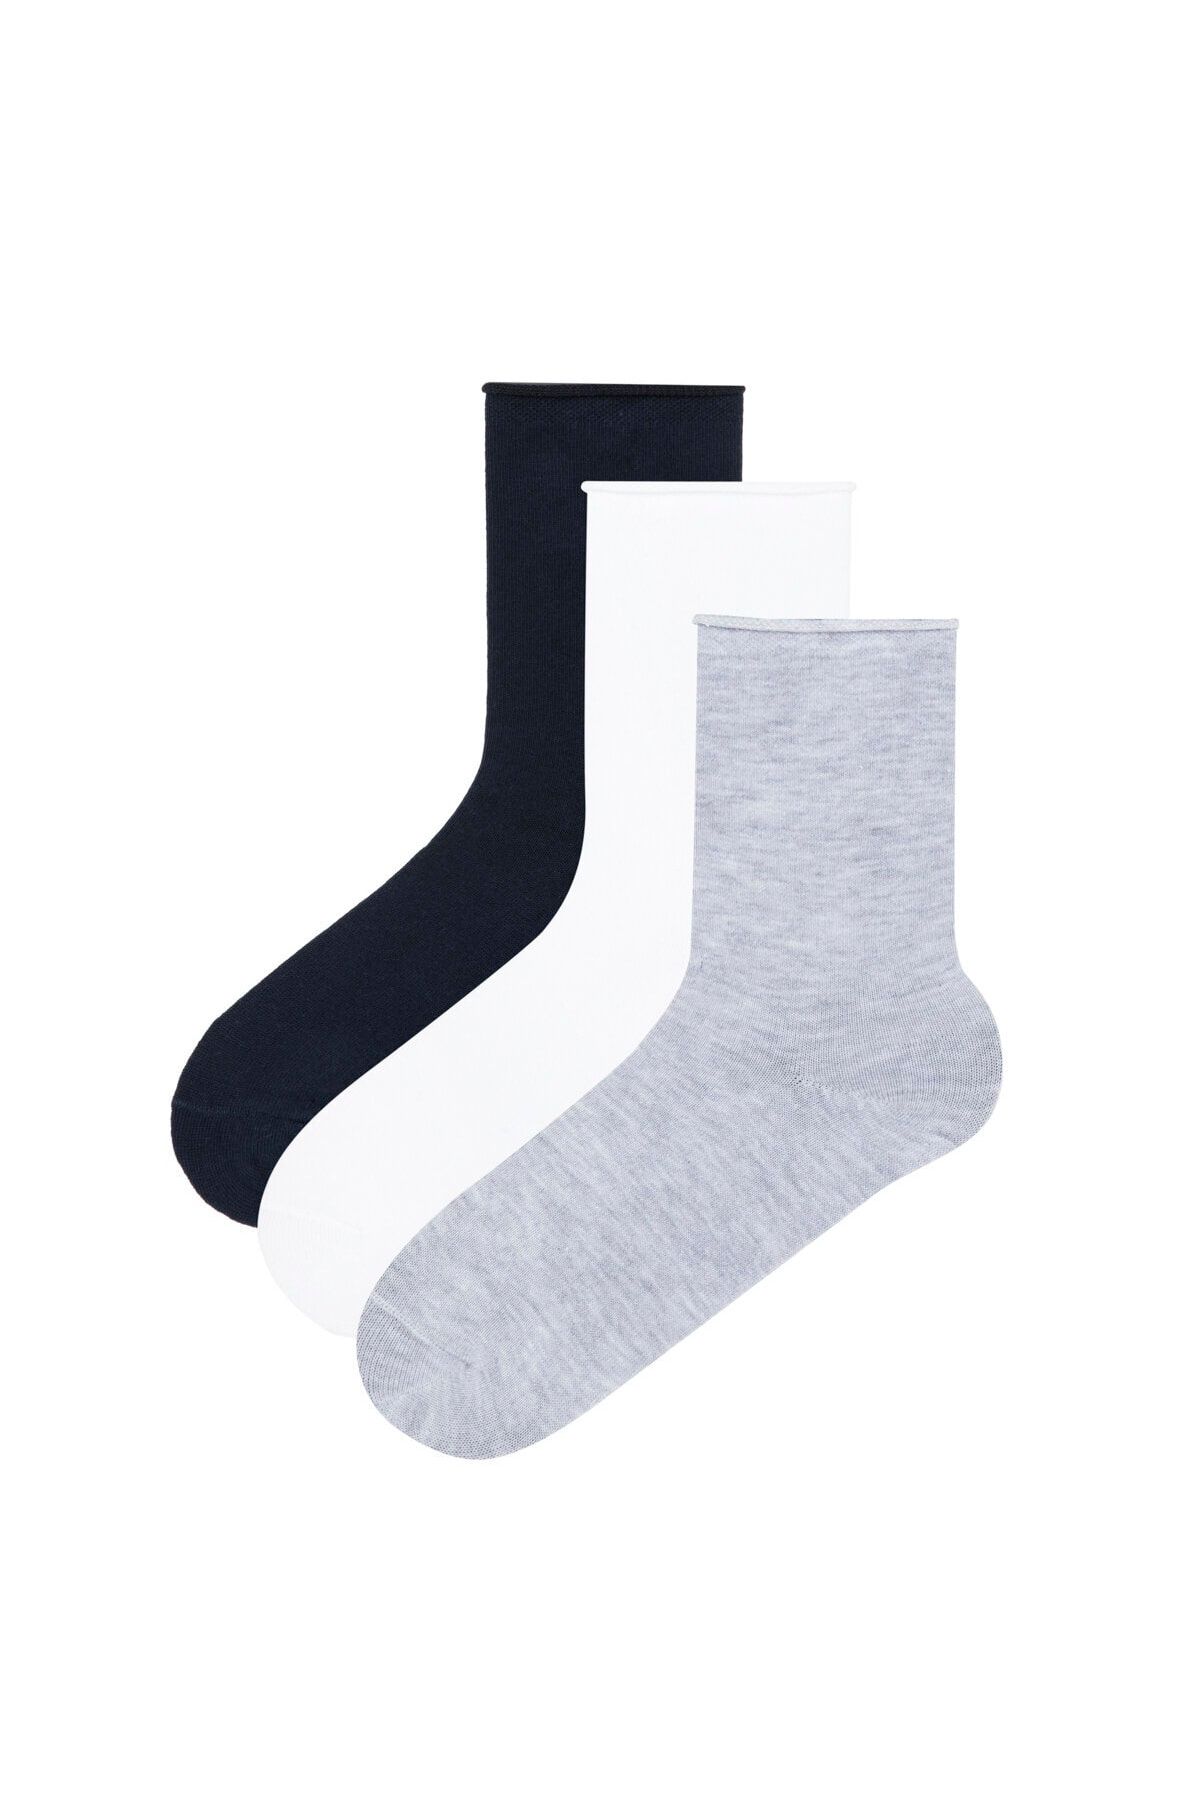 Penti Lacivert Kız Çocuk Basic 3'lü Soket Çorap